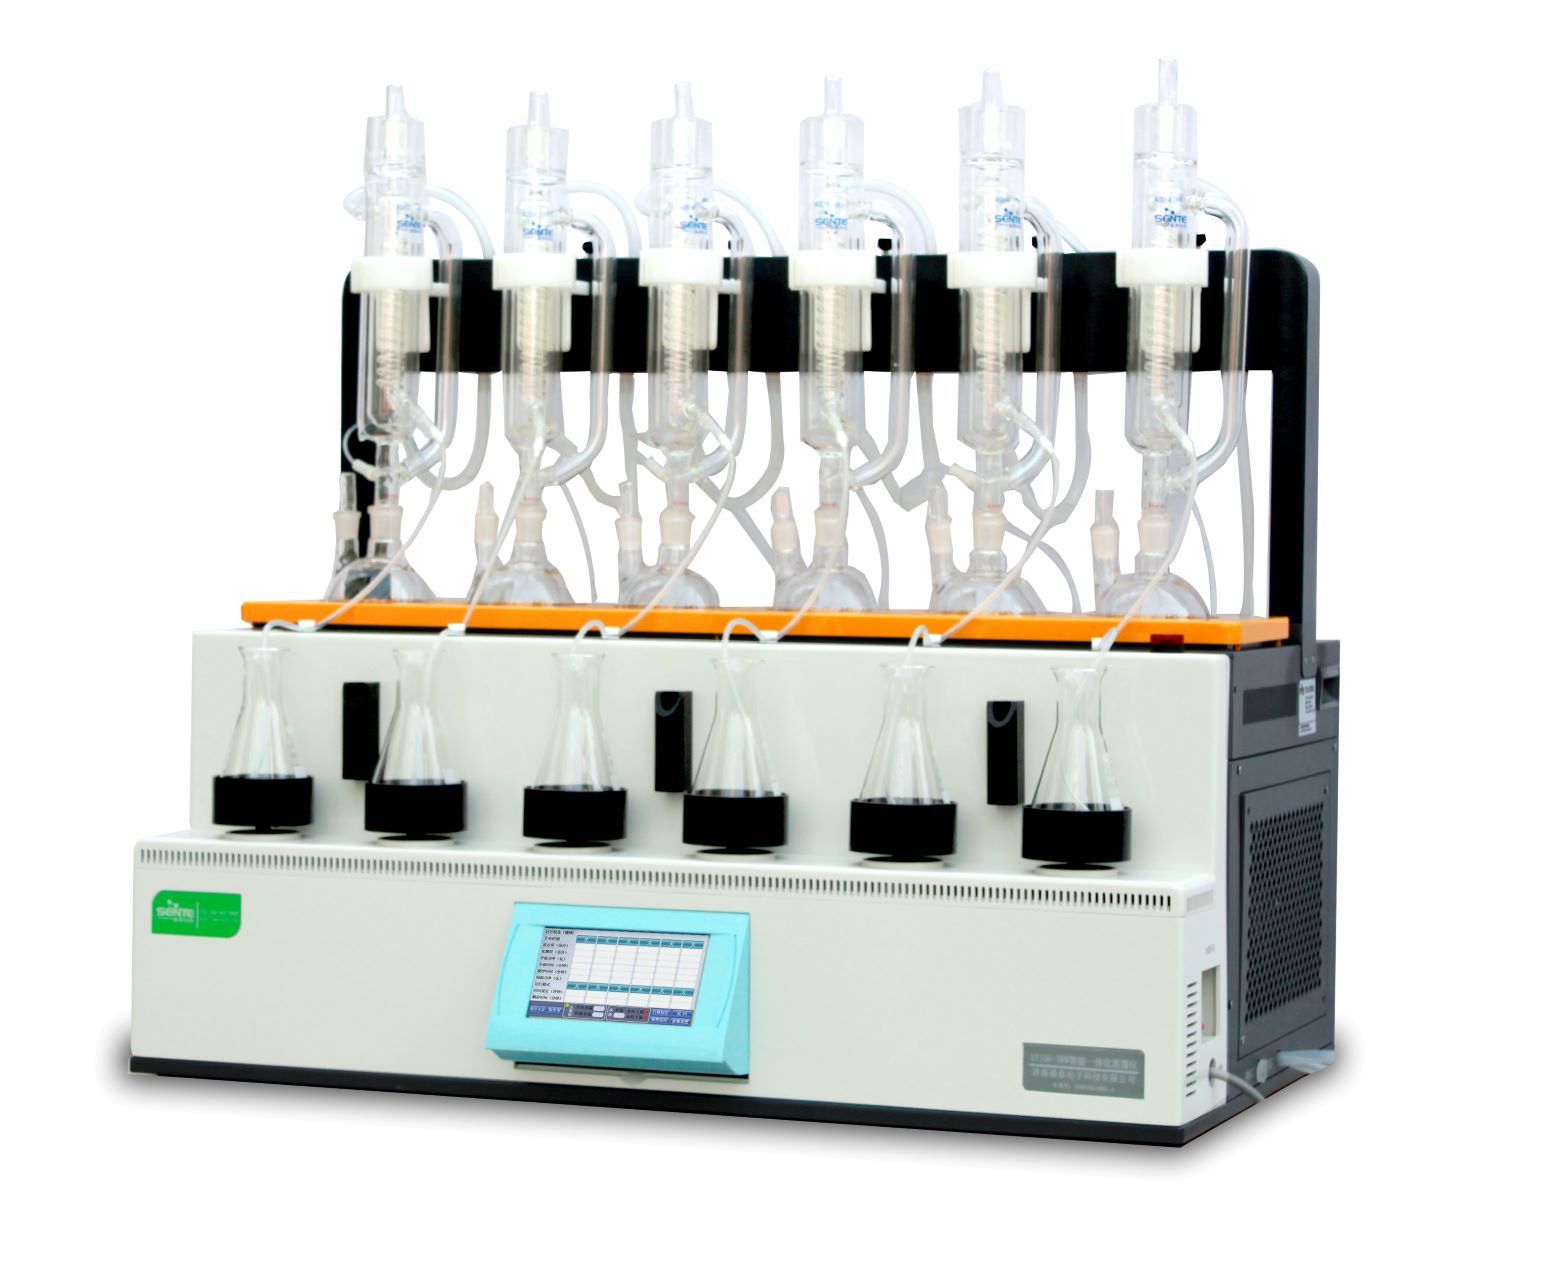 盛泰ST106-3RW智能一体化蒸馏仪